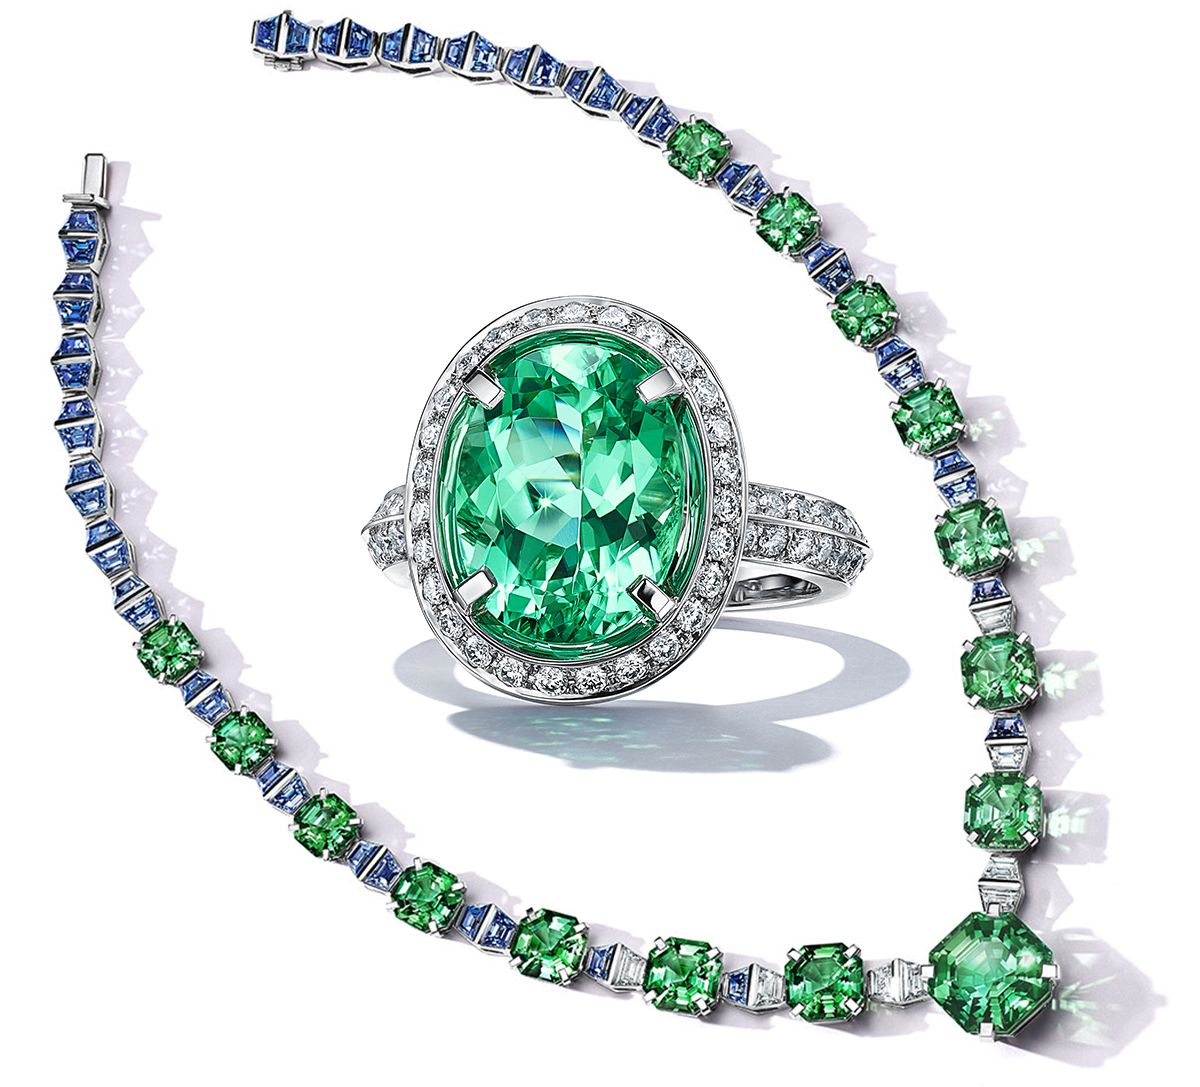 Колье из платины с зелеными турмалинами общим весом более 77 карат, сапфирами общим весом более 29 карат и бриллиантами; кольцо из платины с овальным зеленым турмалином разновидности медистый эльбаит весом более 3 карат с бриллиантами Tiffany & Co.